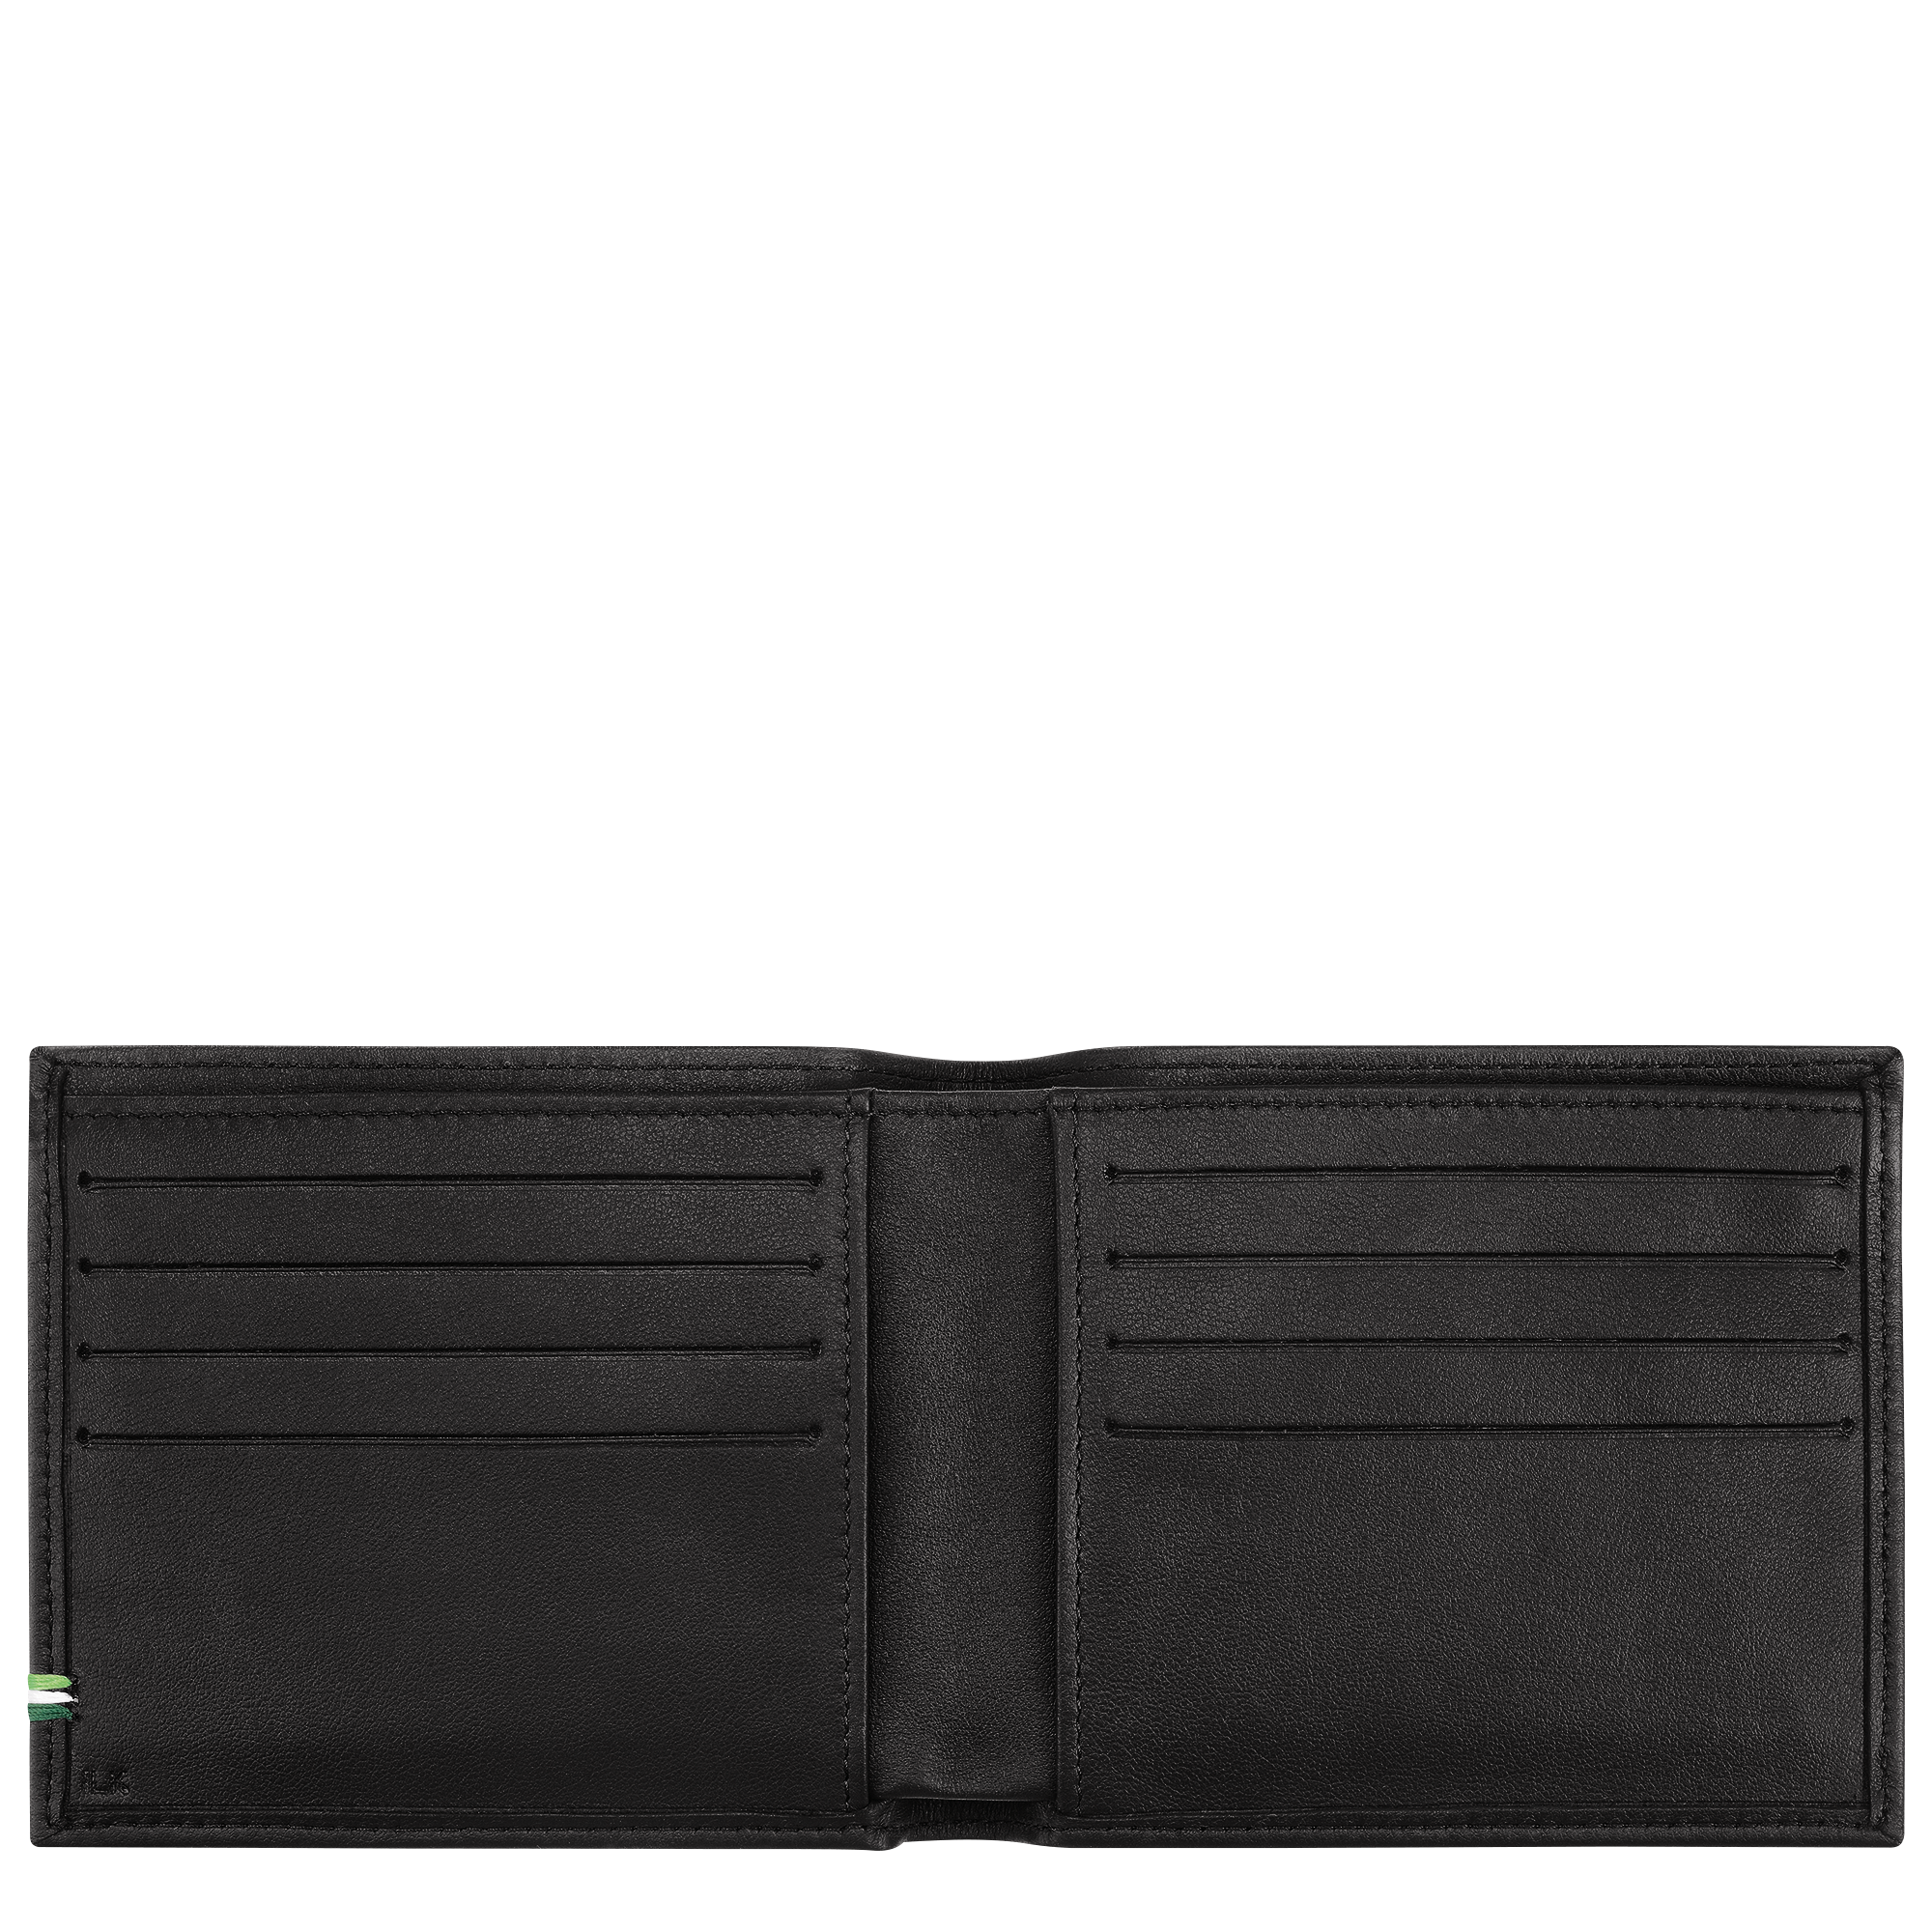 Longchamp LONGCHAMP SUR SEINE - Wallet in Black - 3 (SKU: L3508HCX001)